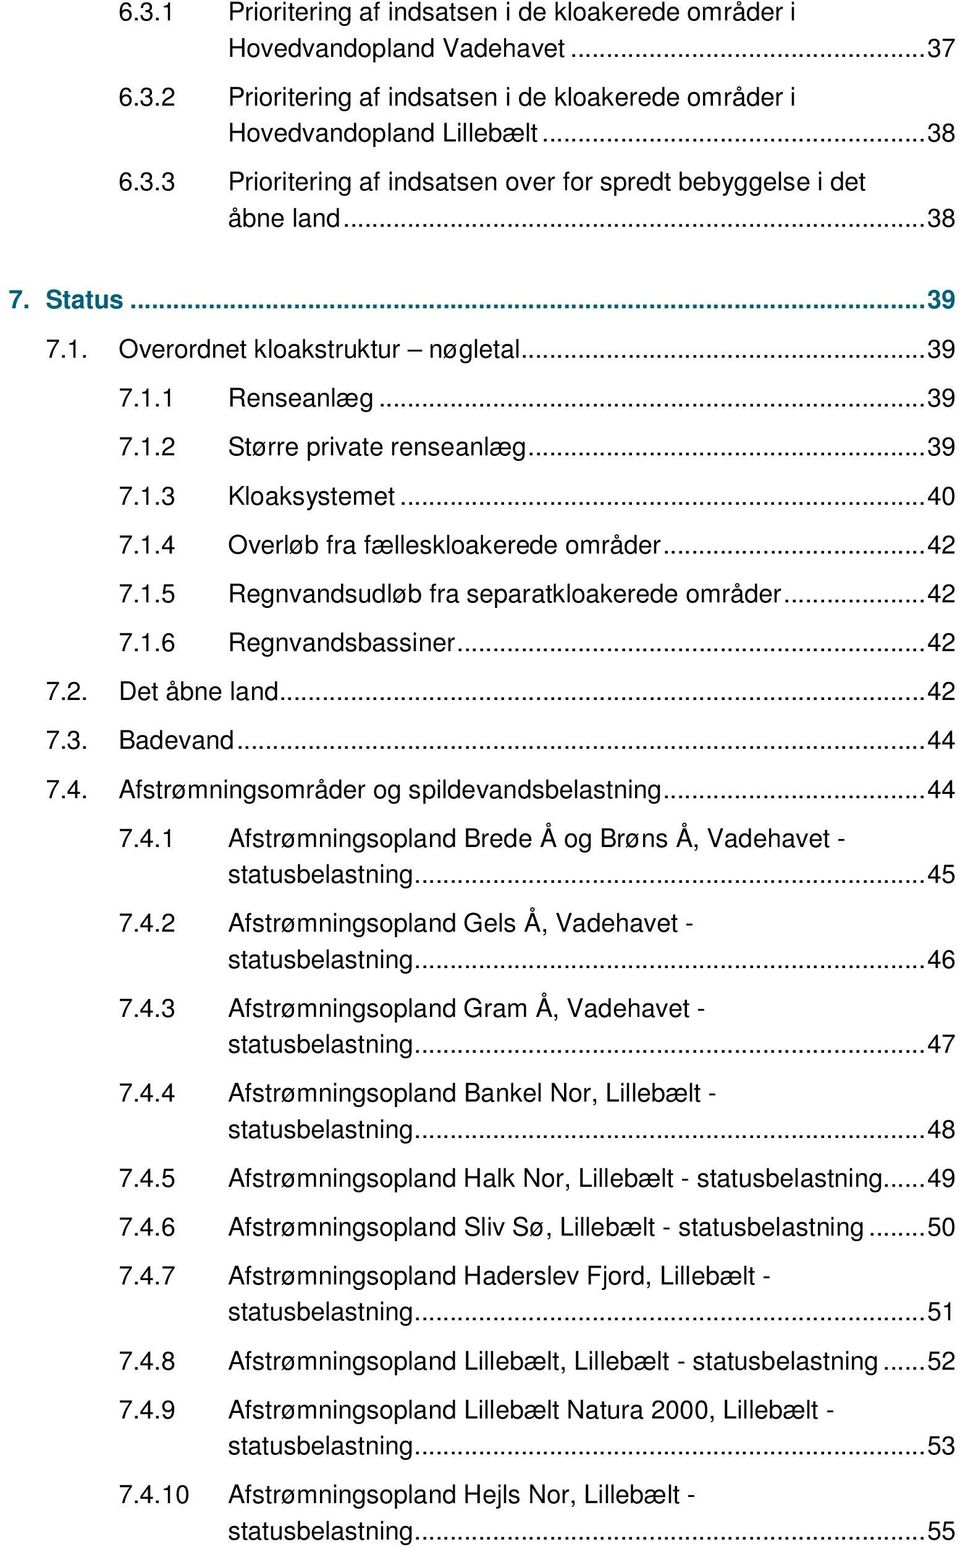 .. 42 7.1.5 Regnvandsudløb fra separatkloakerede områder... 42 7.1.6 Regnvandsbassiner... 42 7.2. Det åbne land... 42 7.3. Badevand... 44 7.4. Afstrømningsområder og spildevandsbelastning... 44 7.4.1 Afstrømningsopland Brede Å og Brøns Å, Vadehavet - statusbelastning.